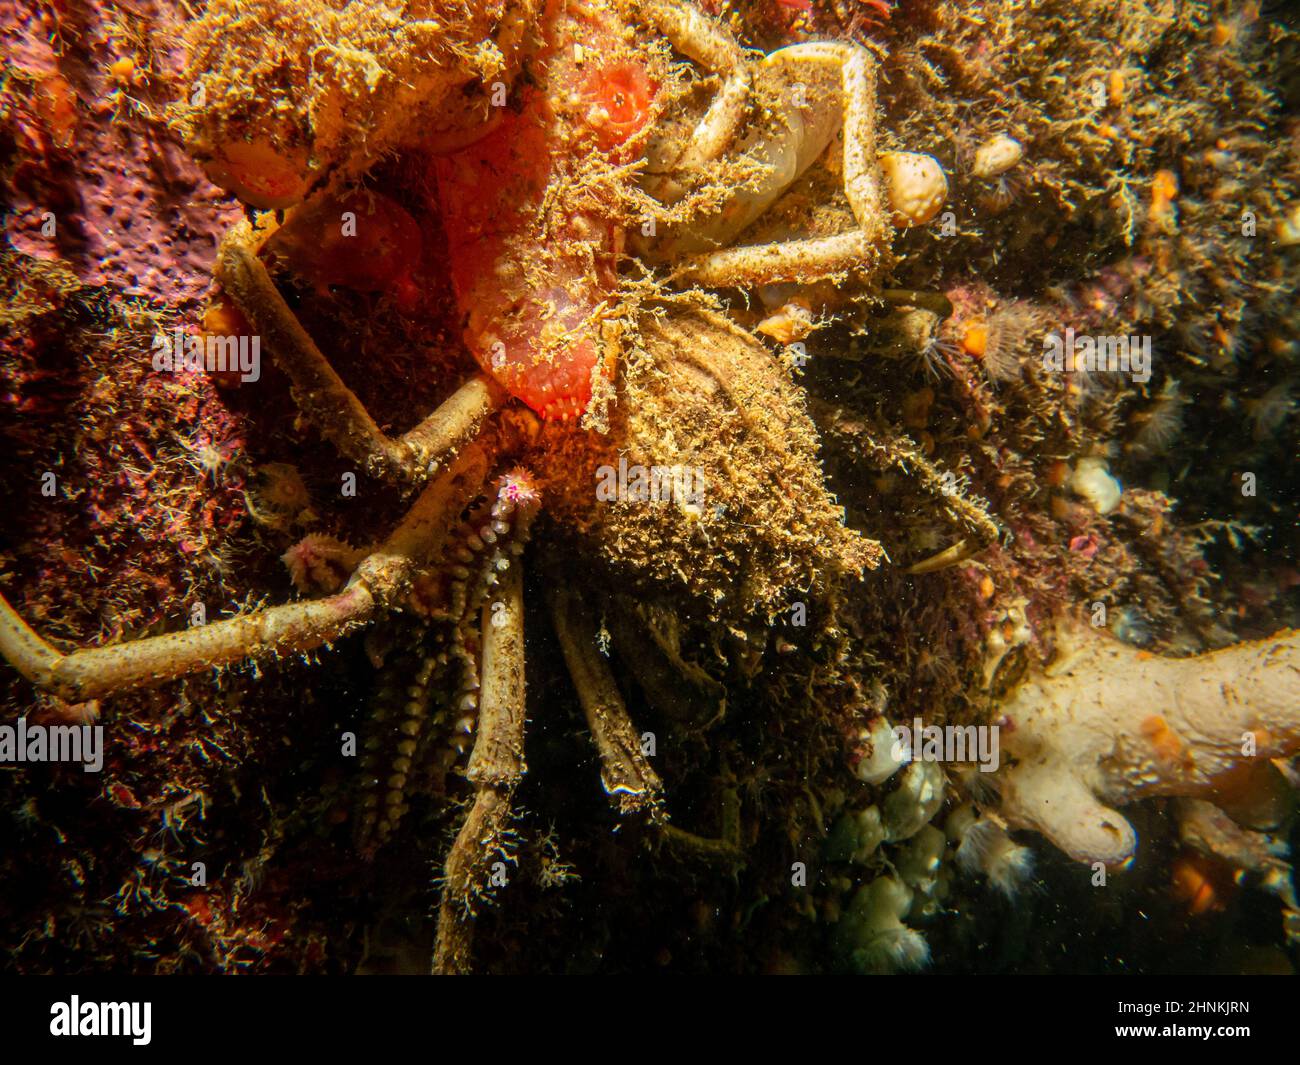 Un gros plan de l'Ascidiacea, communément connu sous le nom d'ascidiens ou de jets de mer et d'un crabe araignée. Photo des îles Weather, mer de Skagerack, ouest de la Suède Banque D'Images